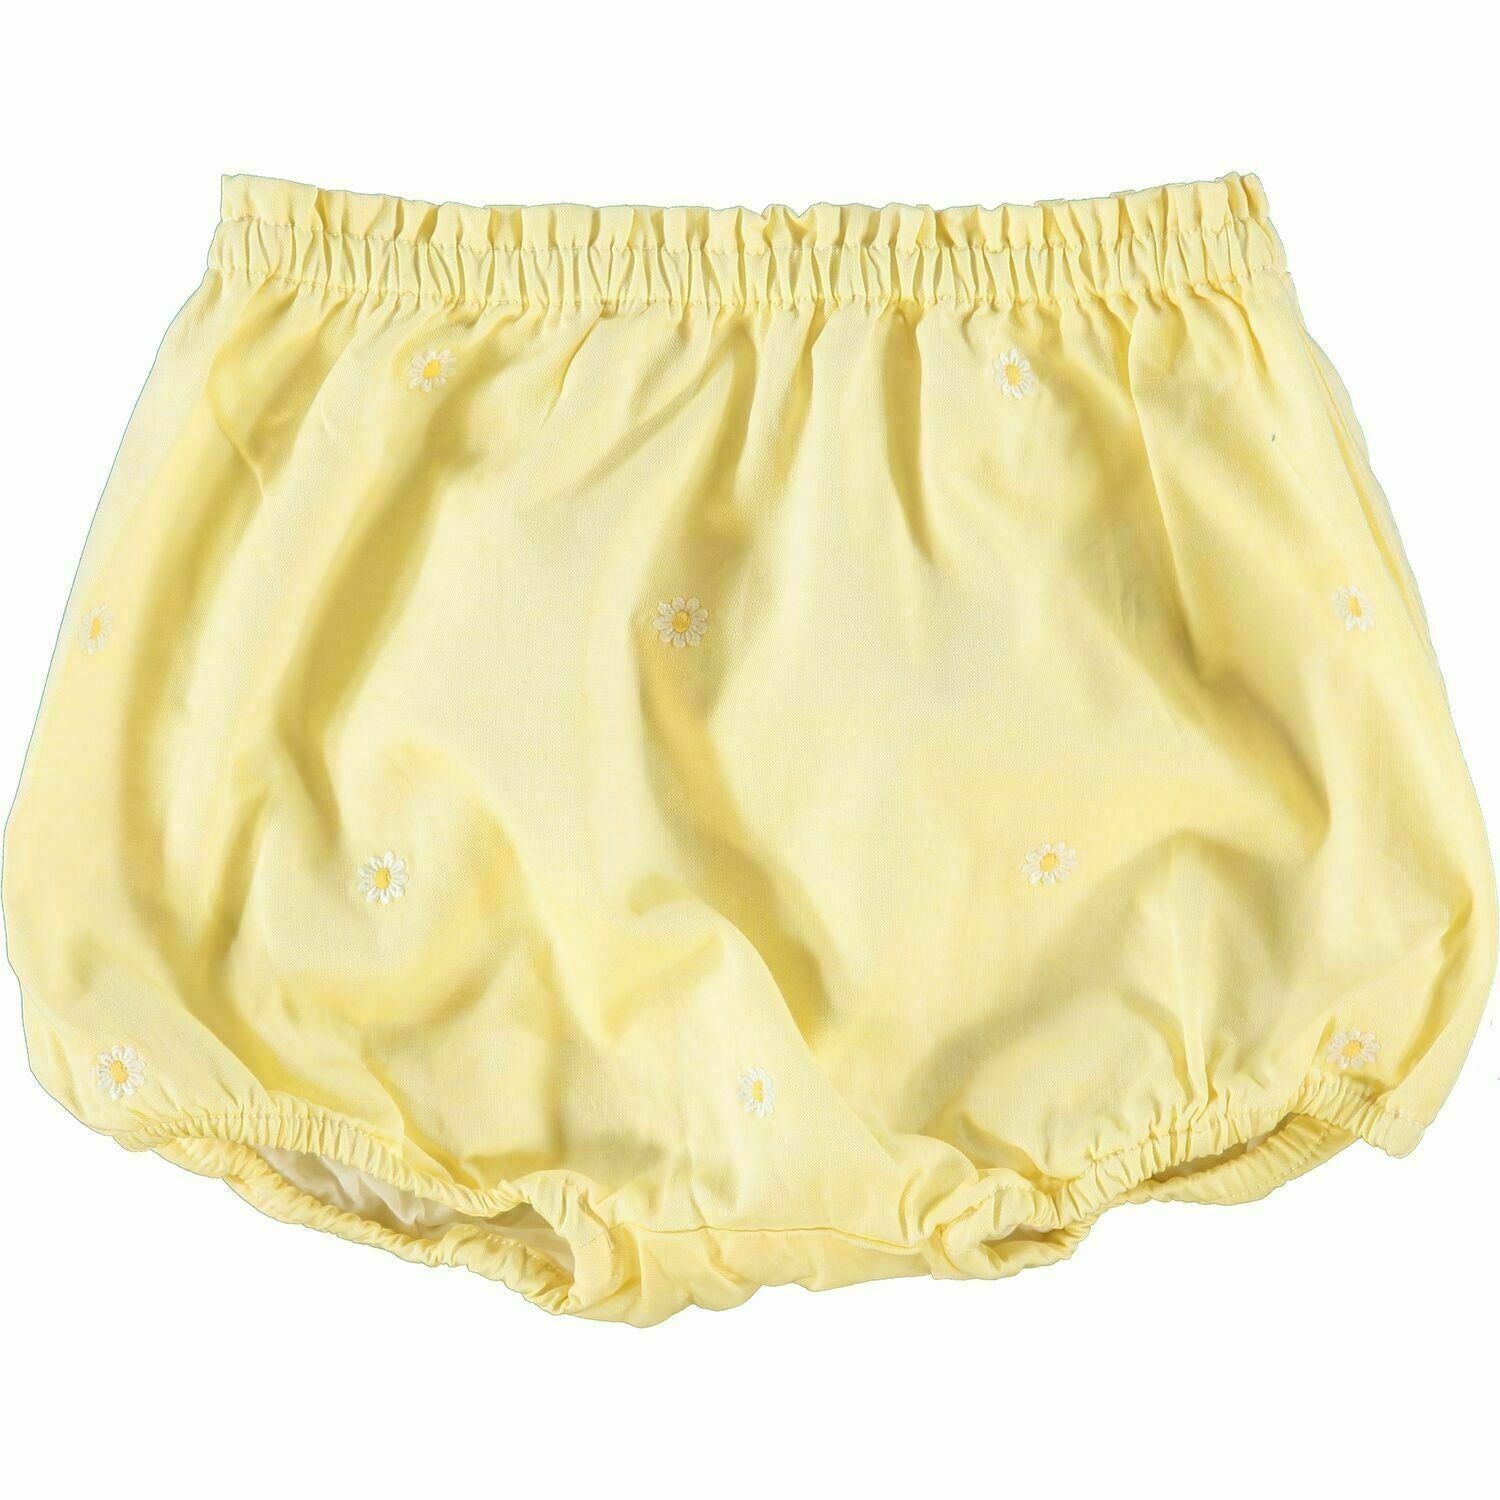 RALPH LAUREN Baby Girls' Yellow Daisy Shorts, size 6 months